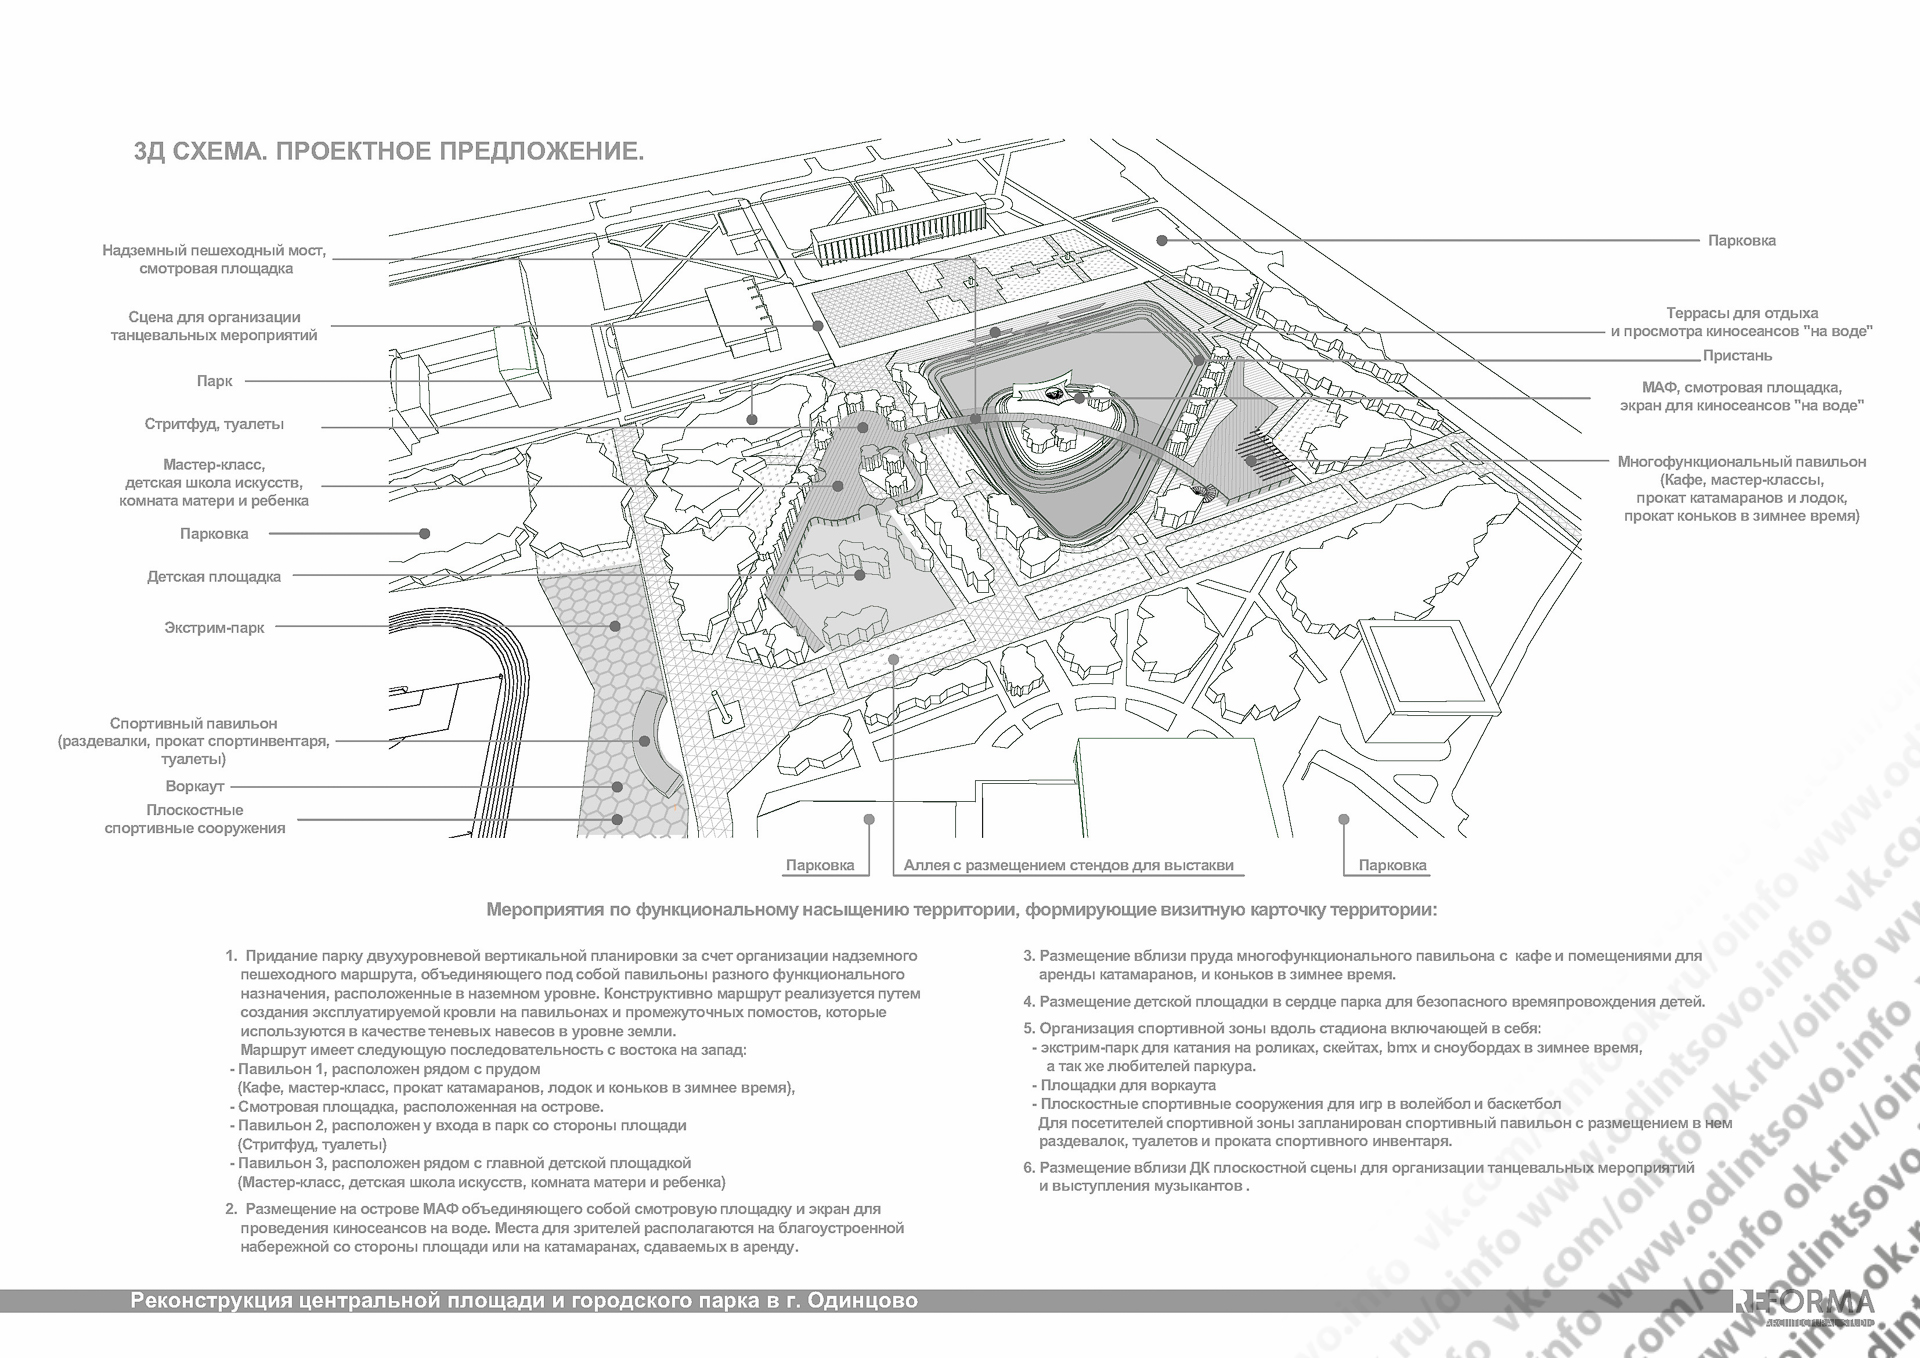 Проектное предложение парка. Схема площади Одинцово. Площадь плоскостных спортивных сооружений. Площадка для размещения павильона.